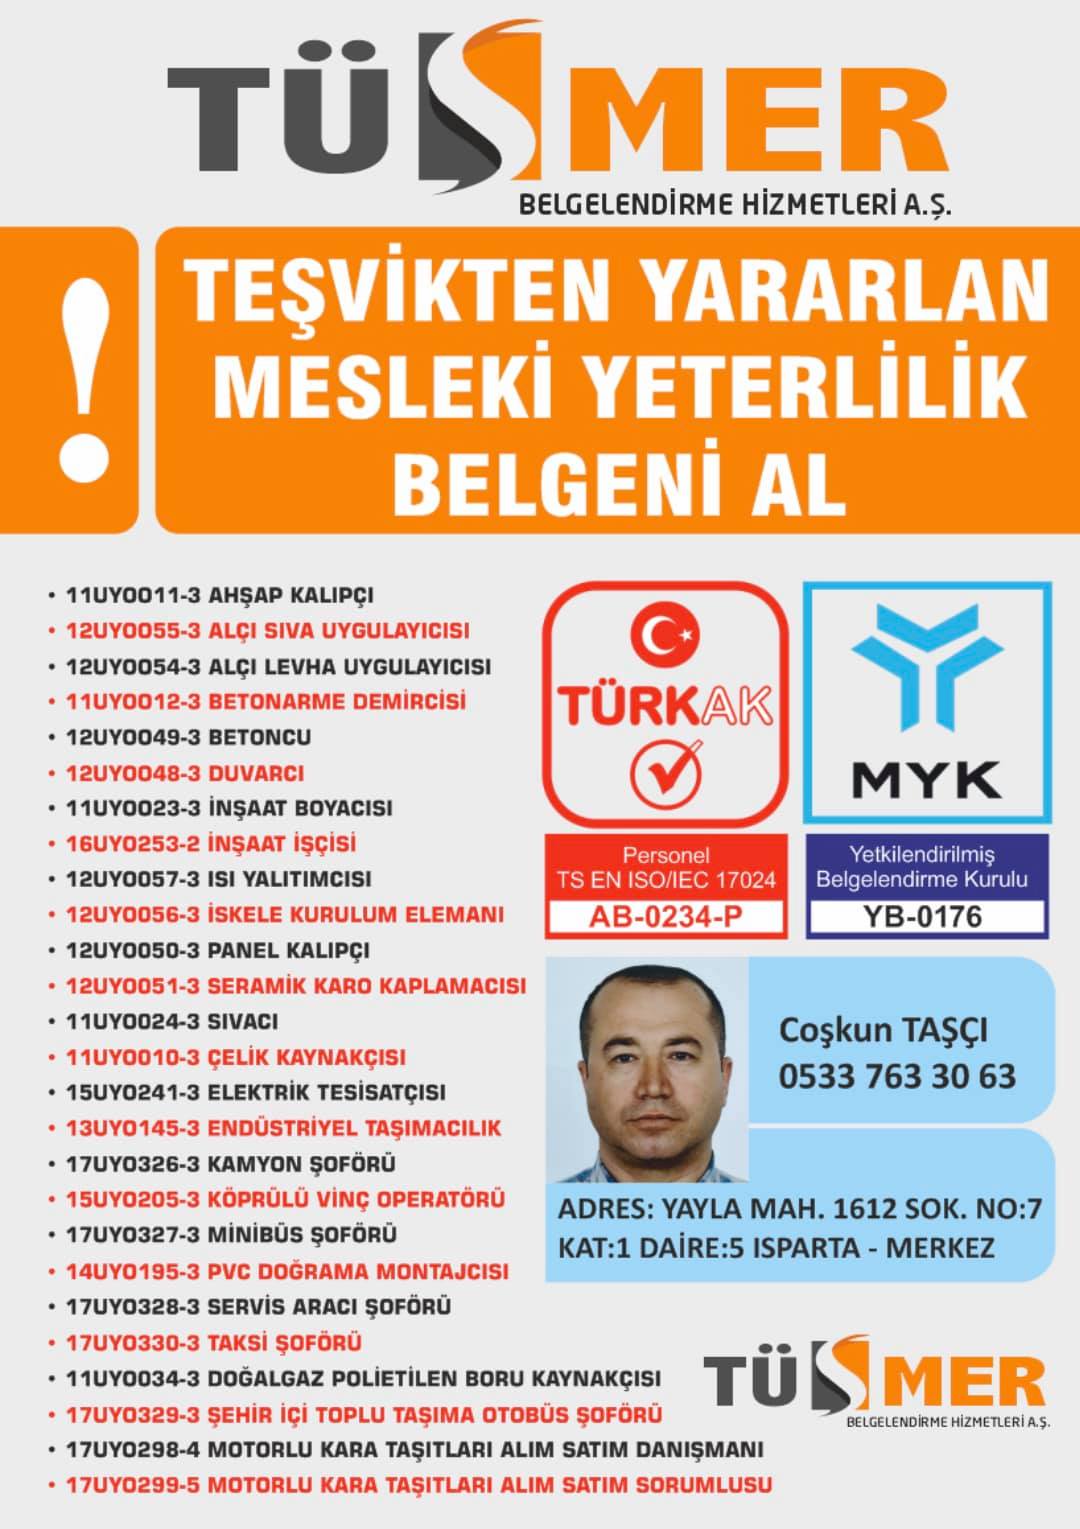 MYK MESLEKİ YETERLİLİK BELGESİ Cevizli Kartal İstanbul